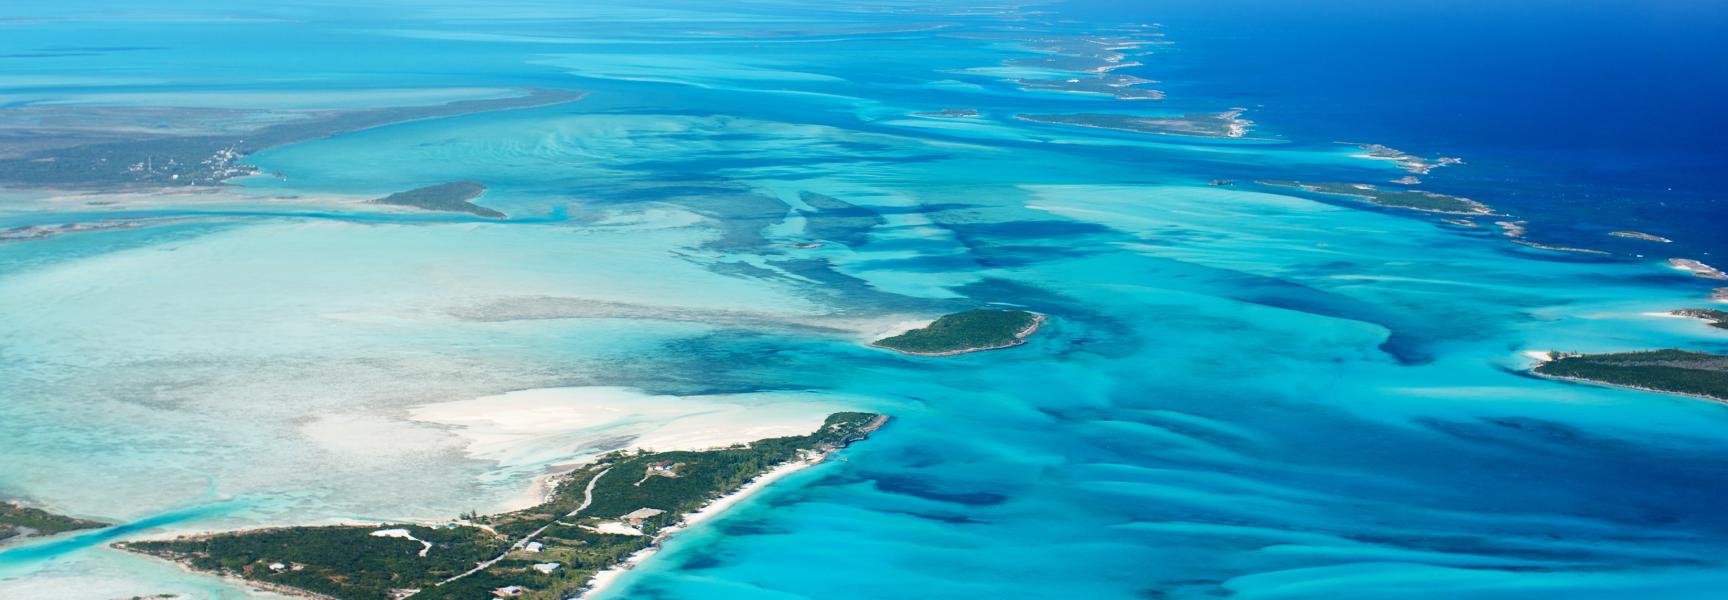 Vista panorámica de las islas de Bahamas desde arriba